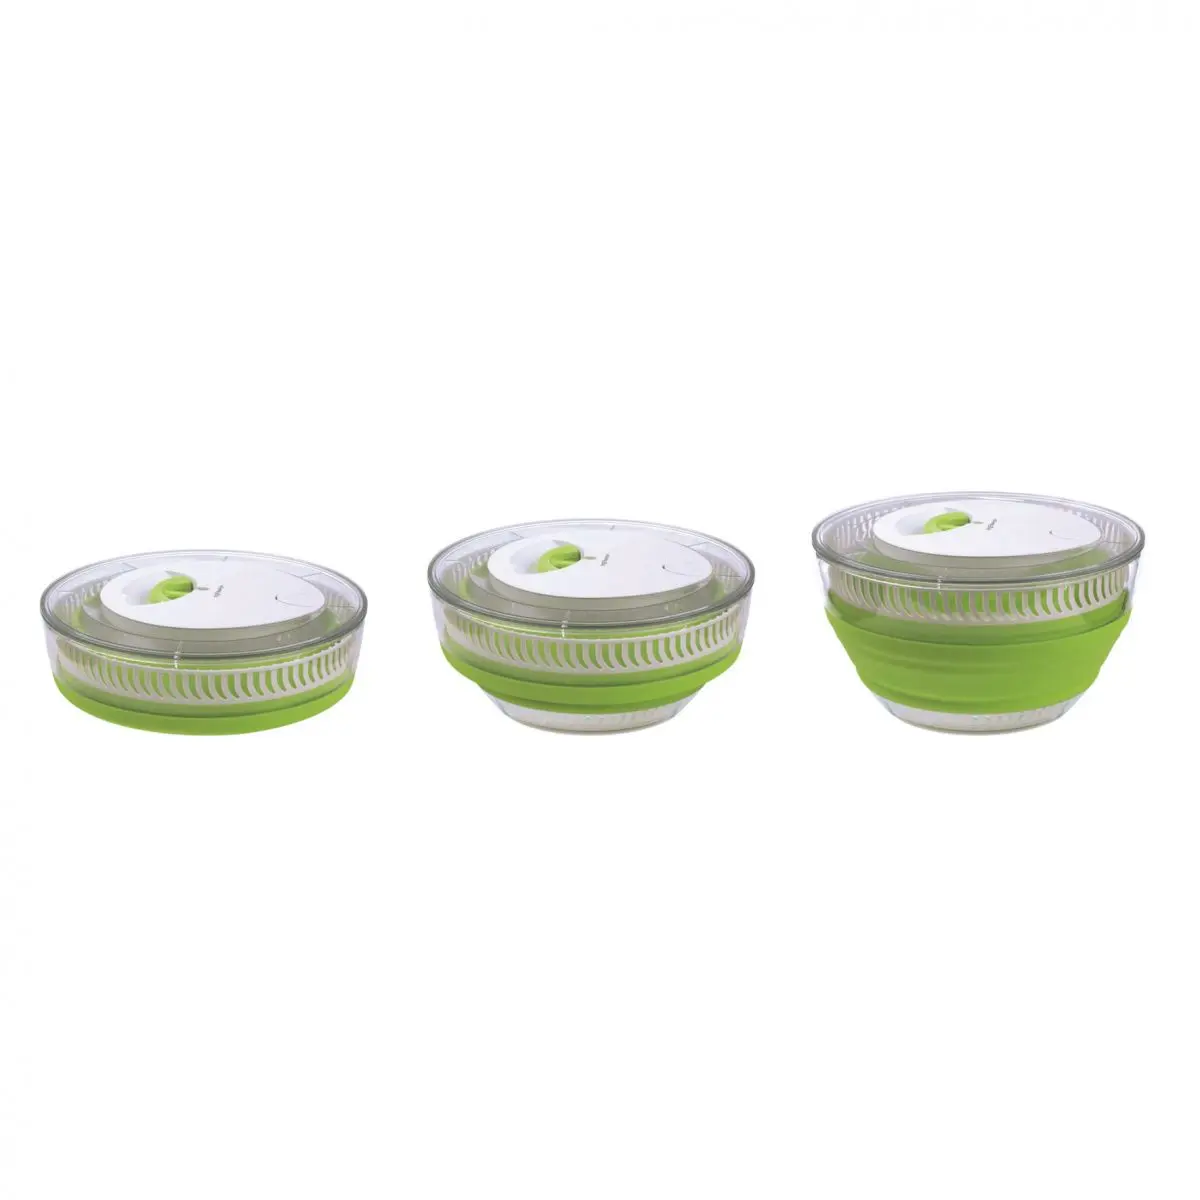 Filtru de salată pliabil Basic - 4 litri